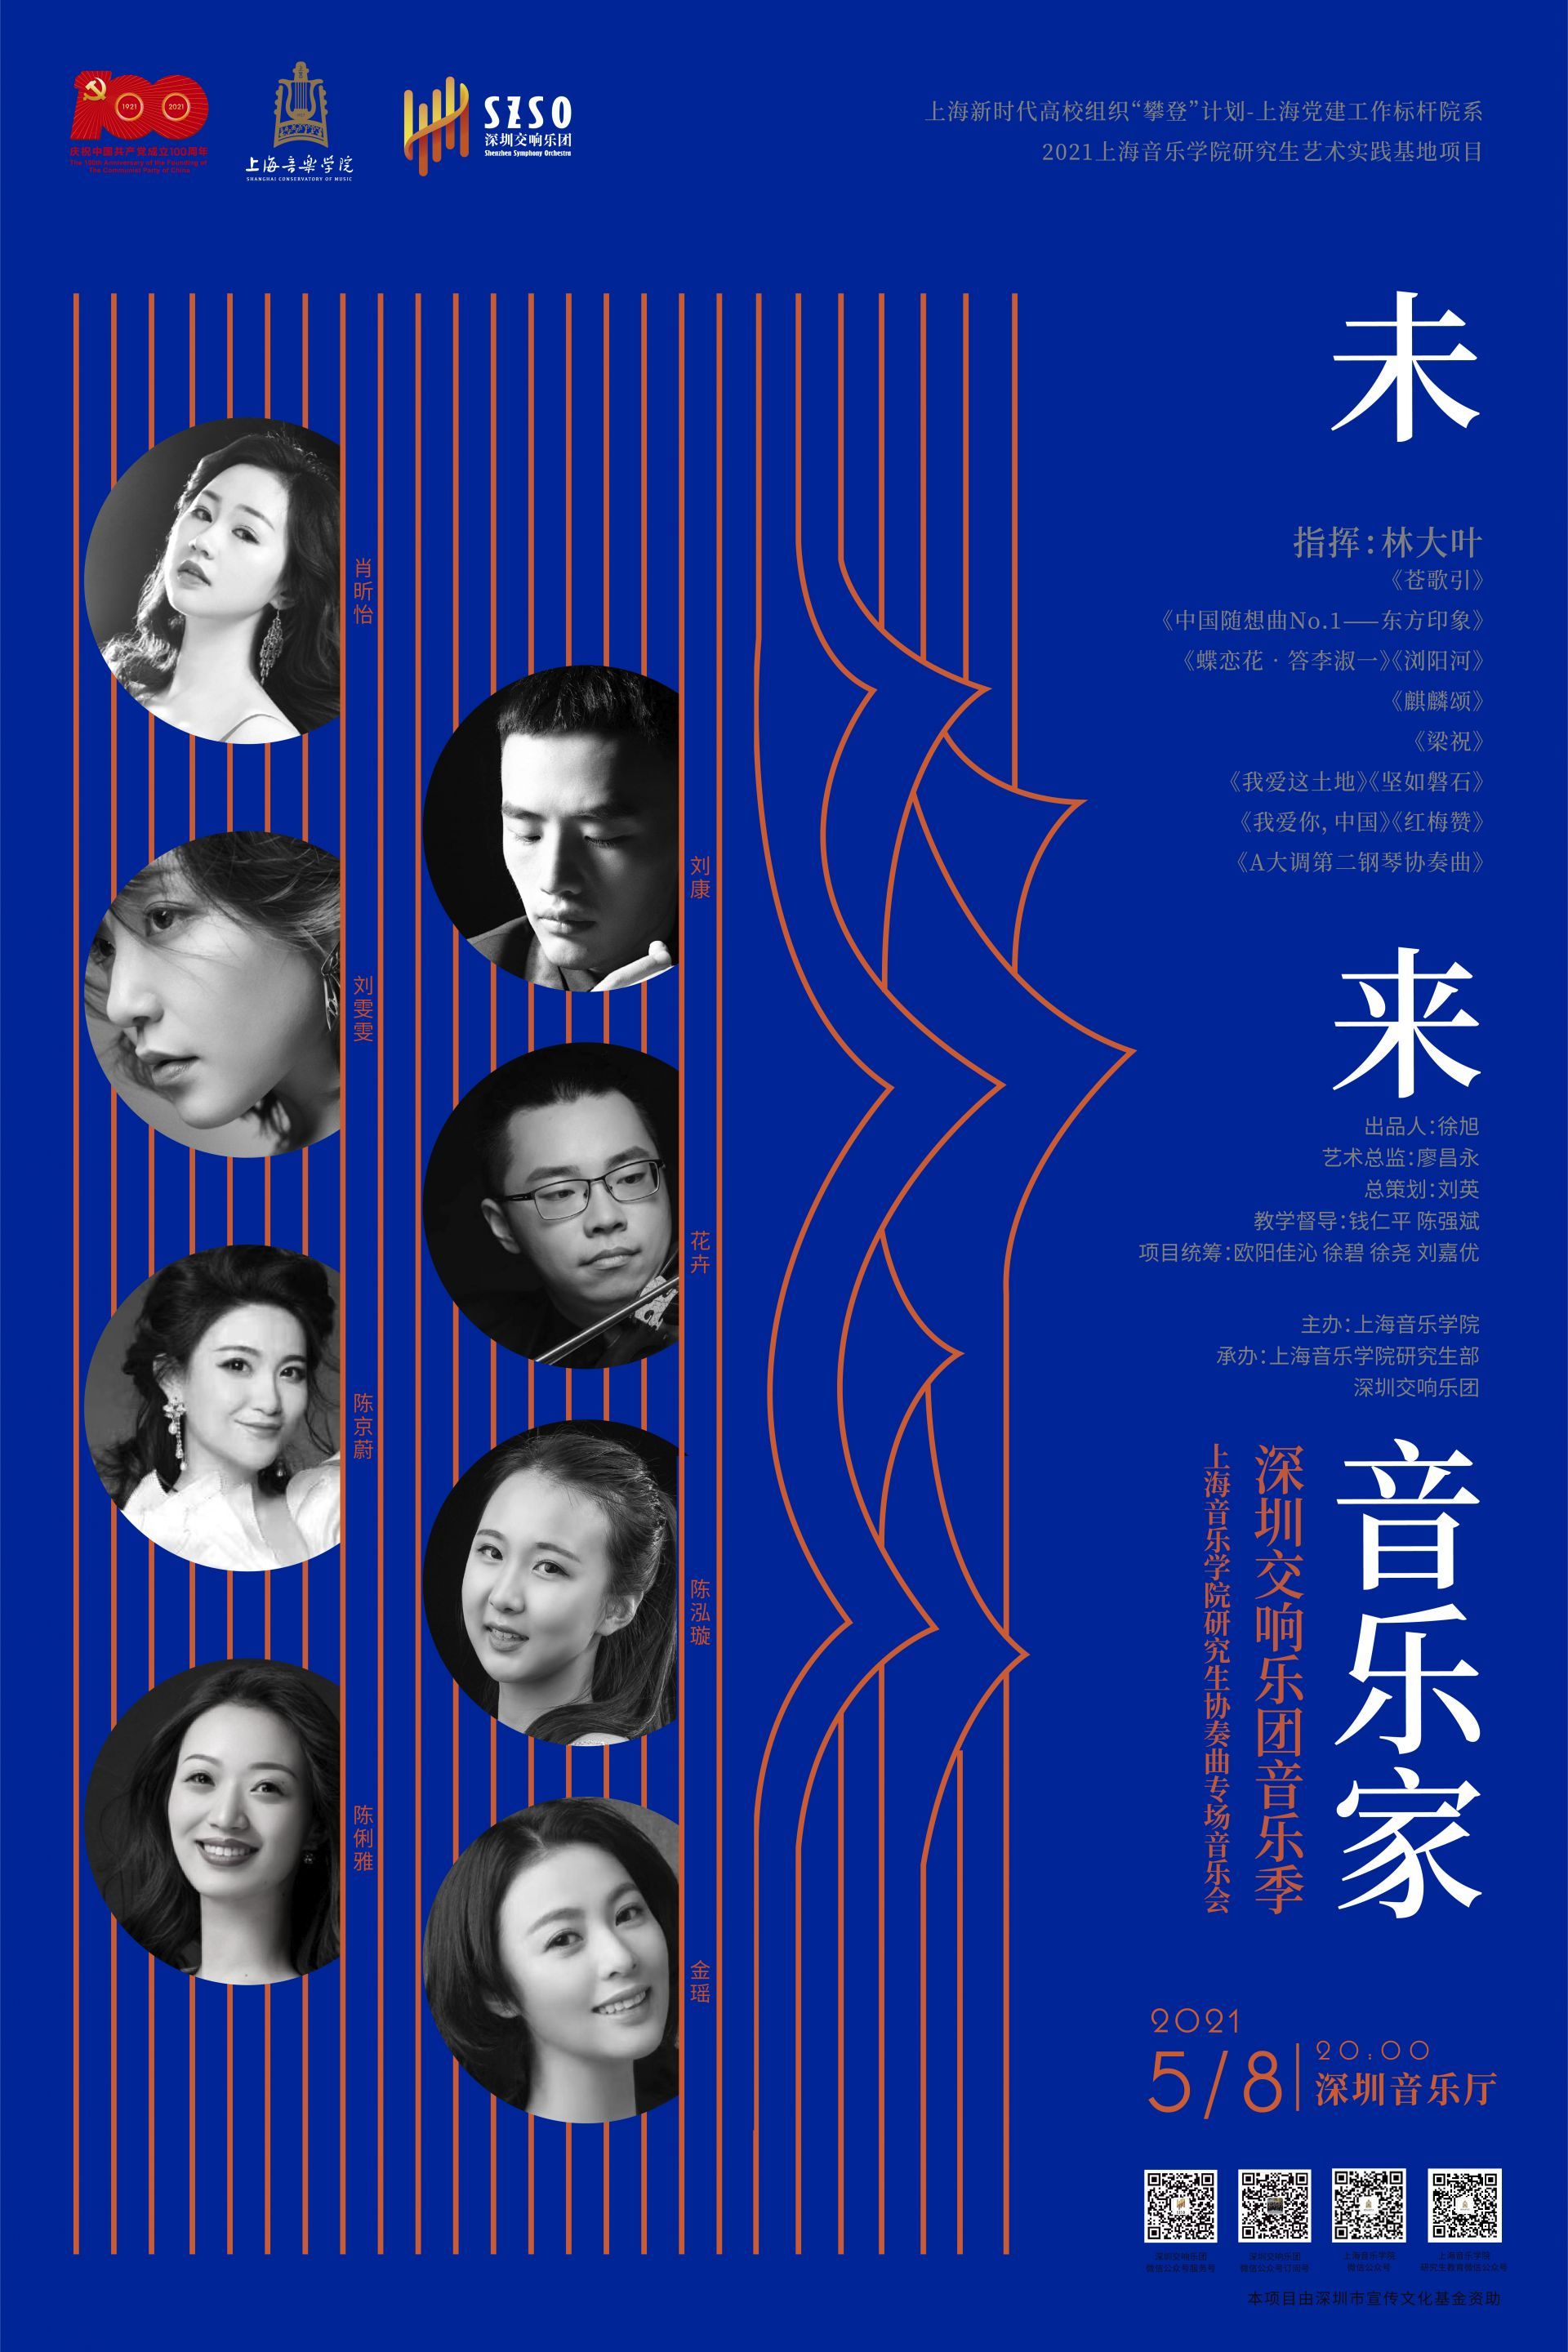 深圳交响乐团将携手上海音乐学院优秀学子举行“未来音乐家”专场音乐会